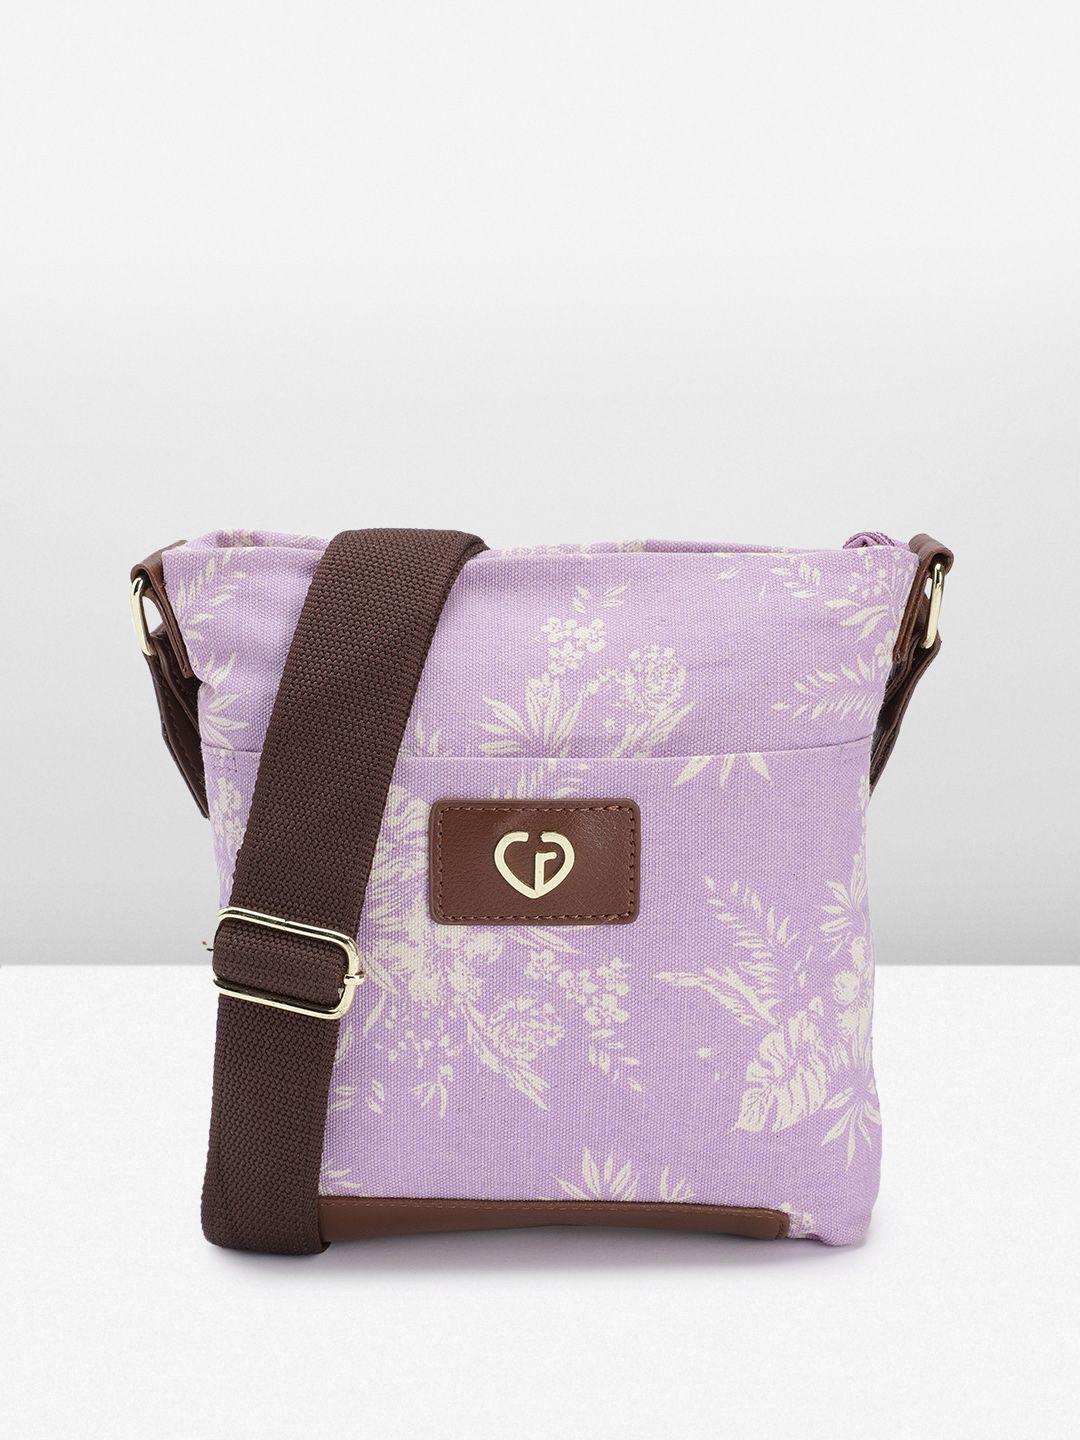 caprese floral print regular structured canvas sling bag